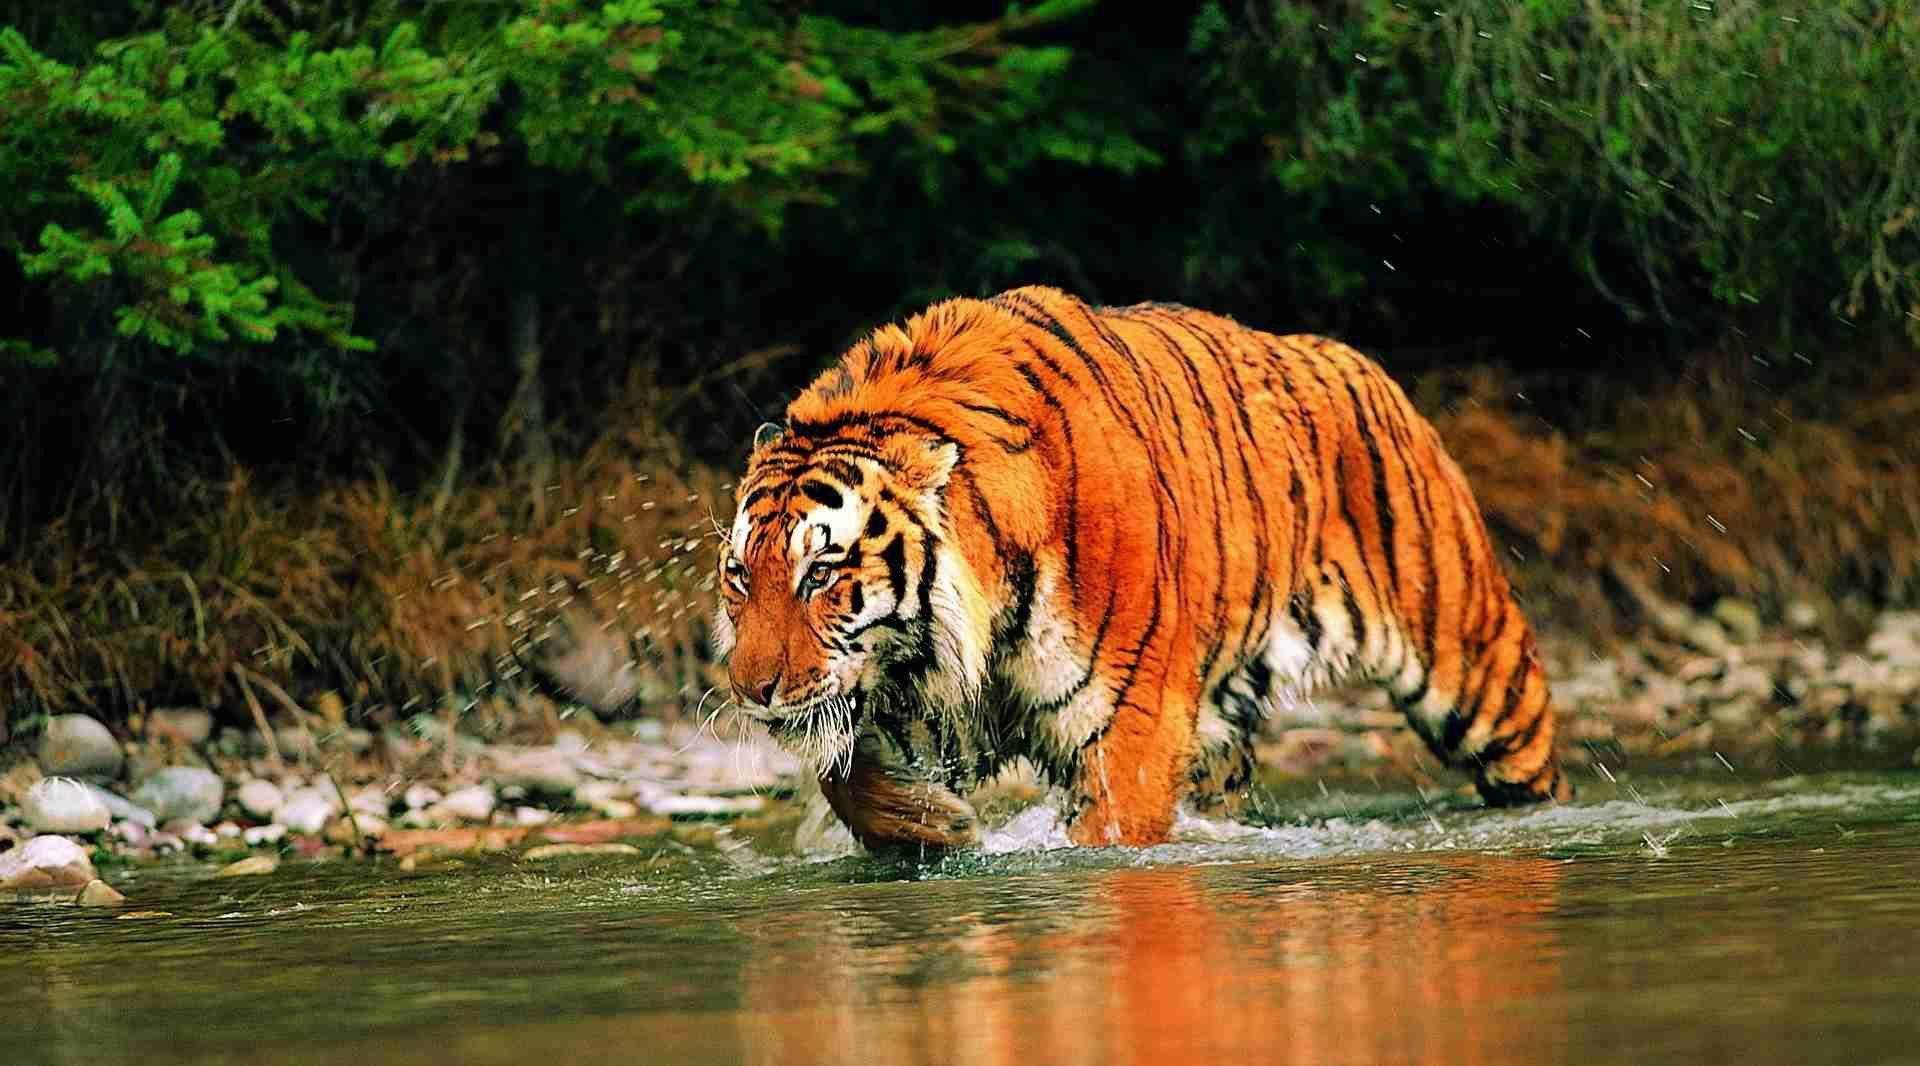 和孟加拉国;苏门答腊虎,仅生活在印度尼西亚所属的苏门答腊岛;爪哇虎